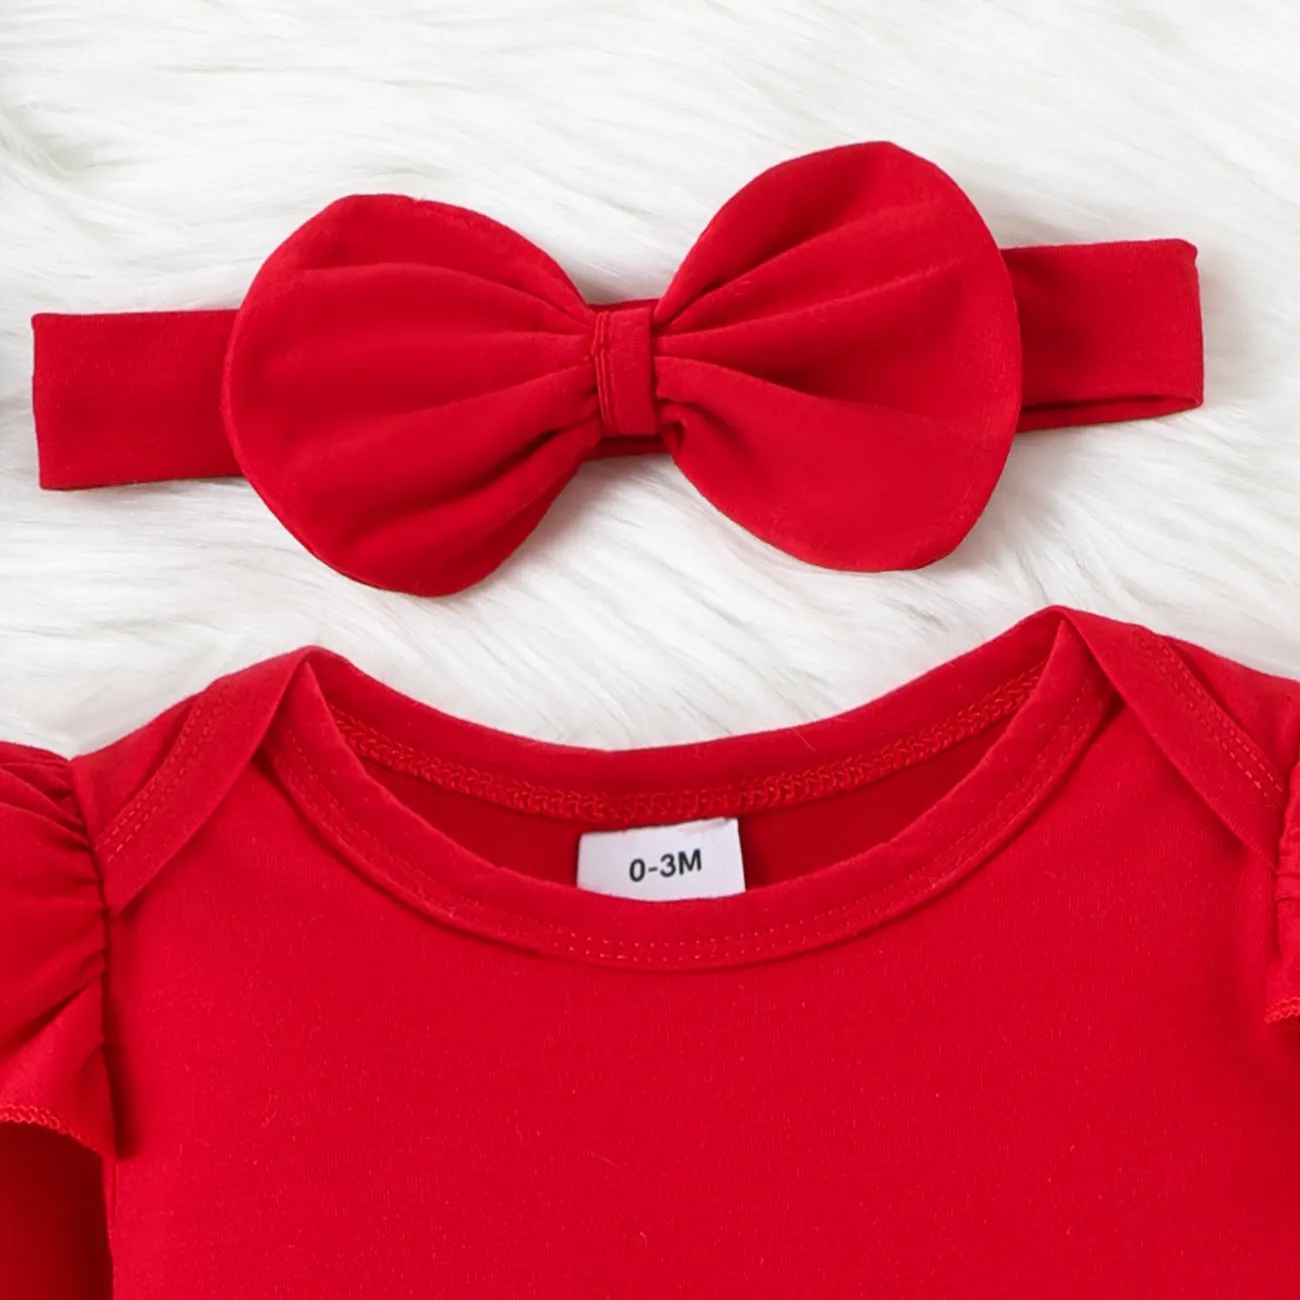 聖誕節 3件 嬰兒 荷葉邊 甜美 長袖 套裝裙 紅色 big image 1